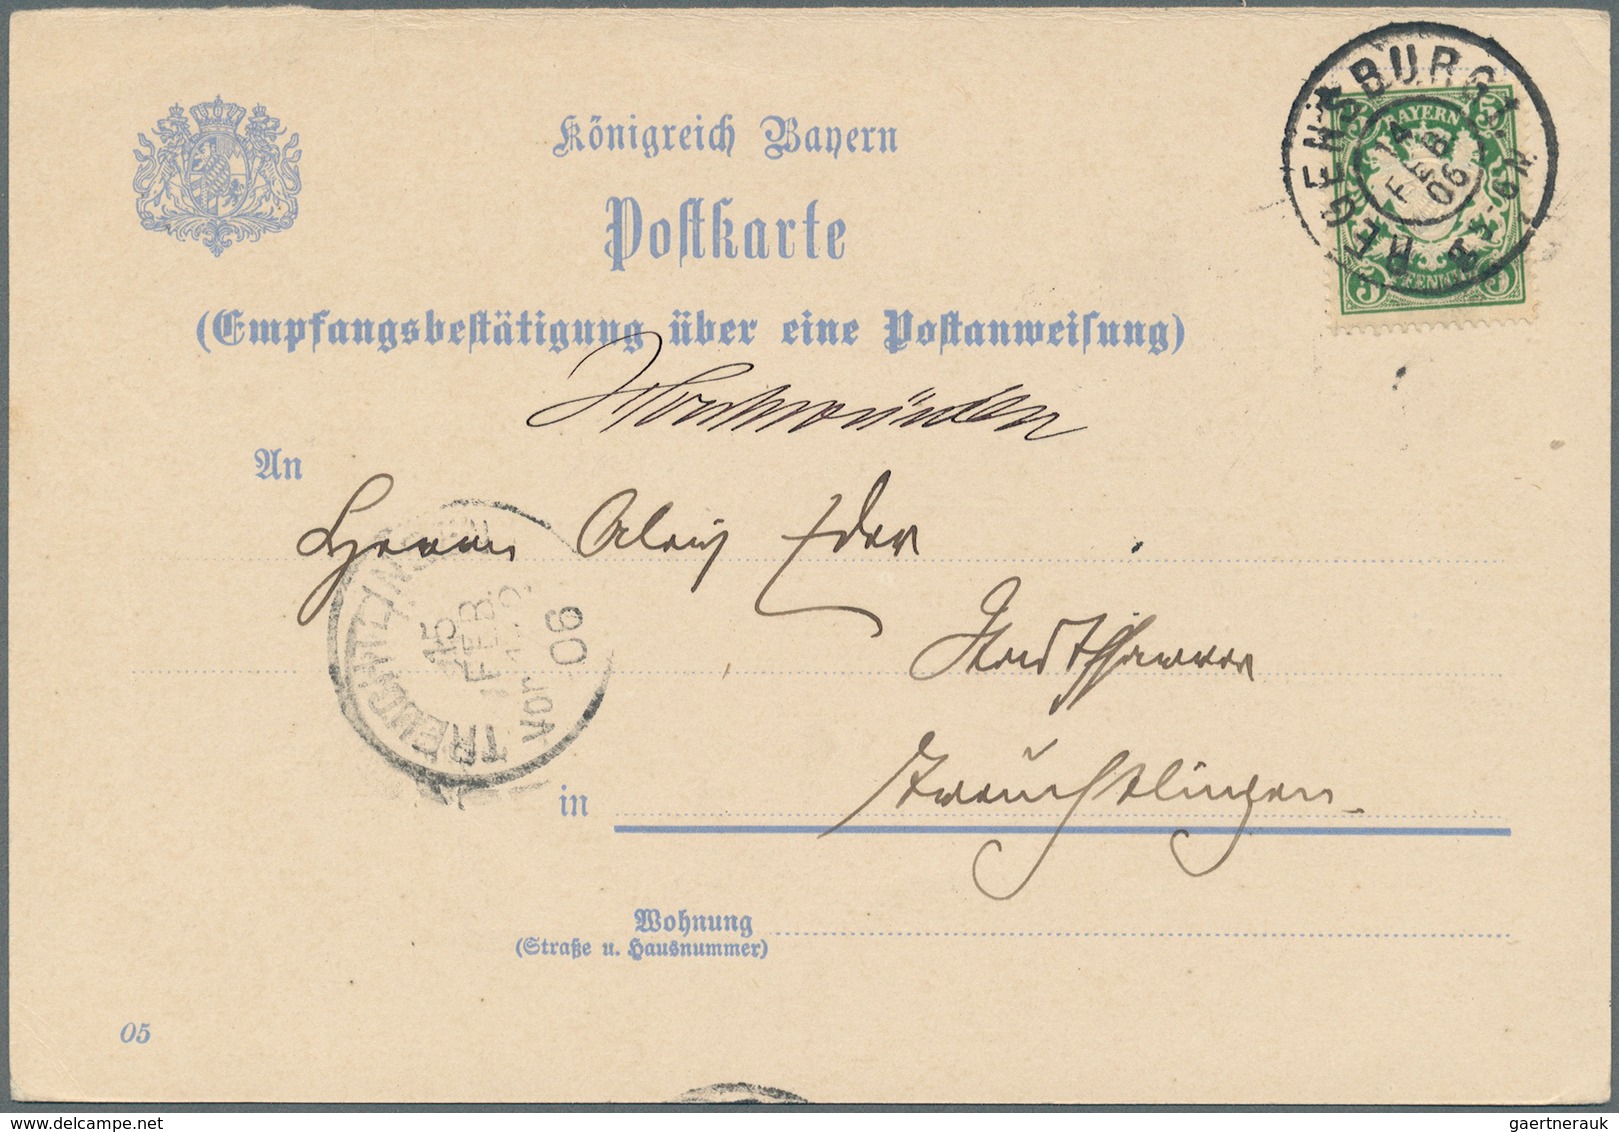 31205 Bayern - Marken und Briefe: 1880/1910, Wappen Pfennigzeit, 70 Belege mit immer wieder auch interessa